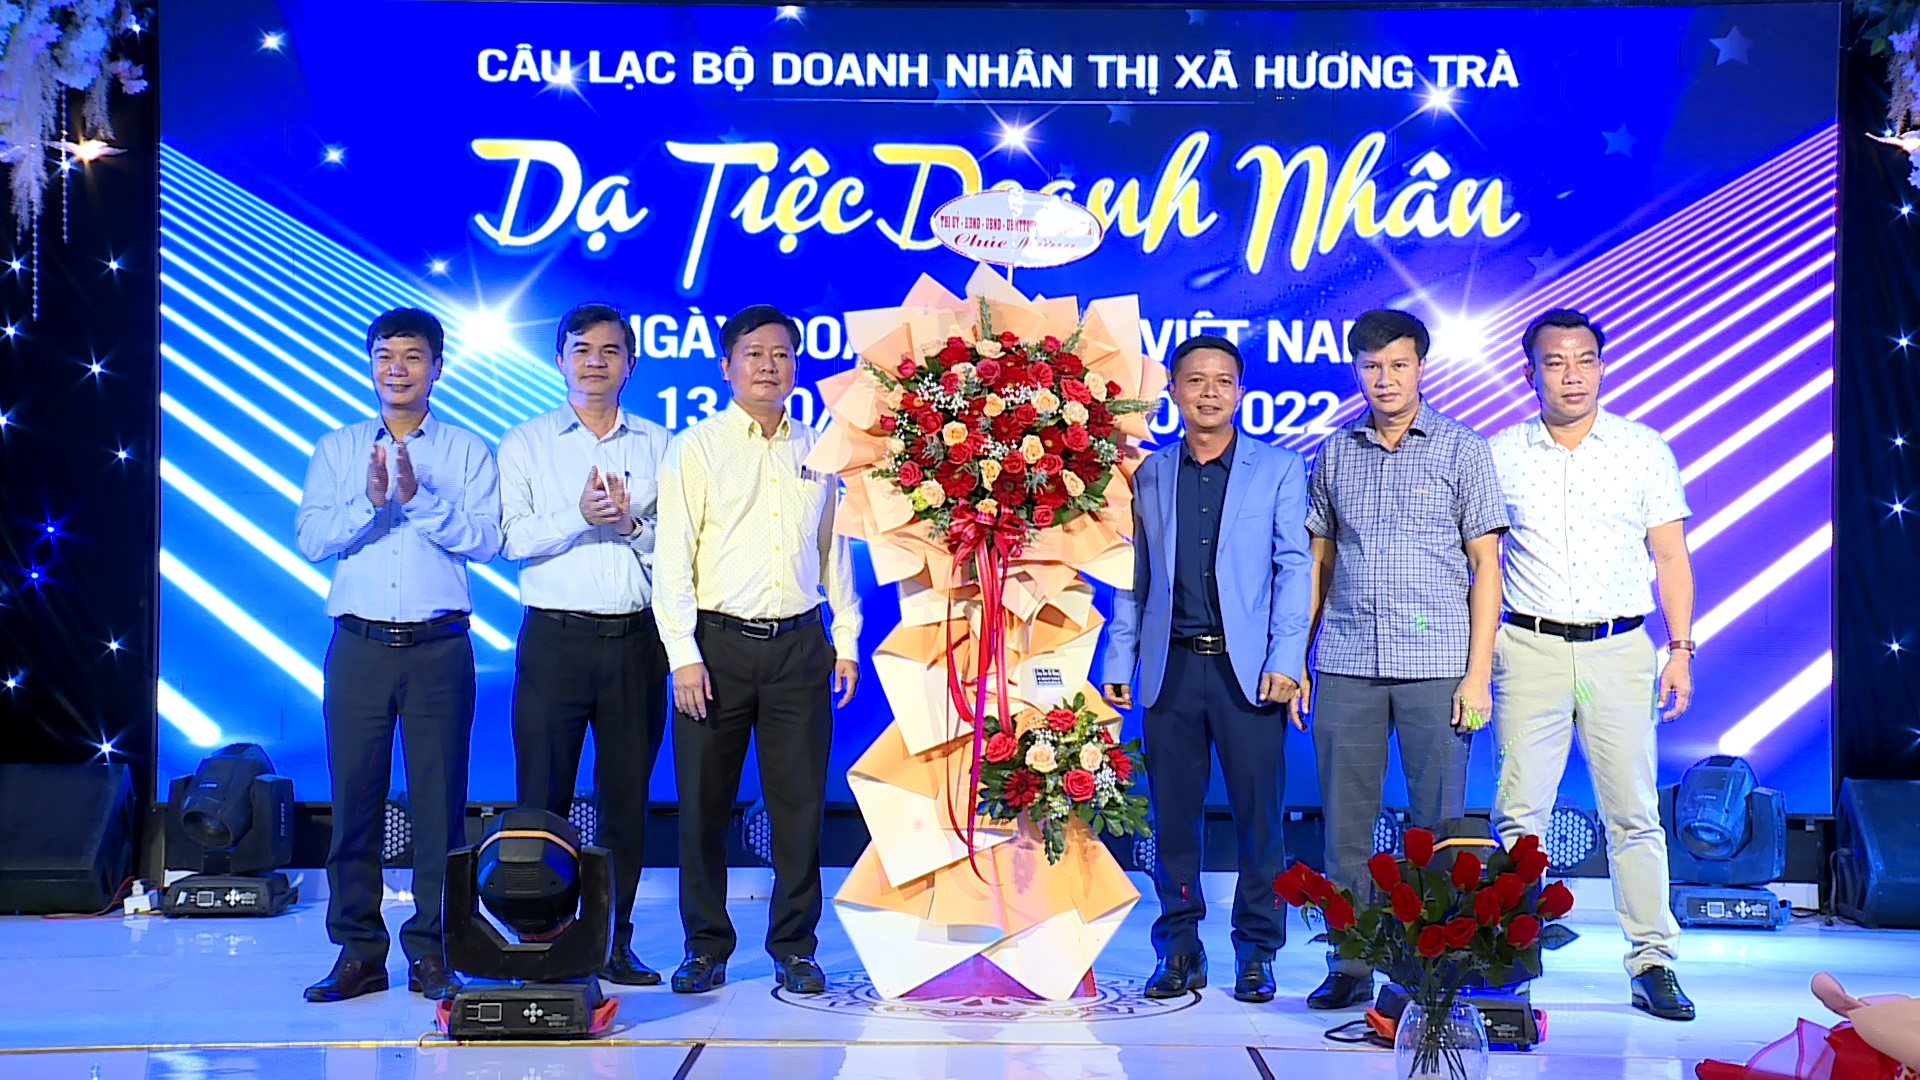 Câu lạc bộ Doanh nhân thị xã Hương Trà tổ chức gặp mặt kỷ niệm 18 năm Ngày doanh nhân Việt Nam